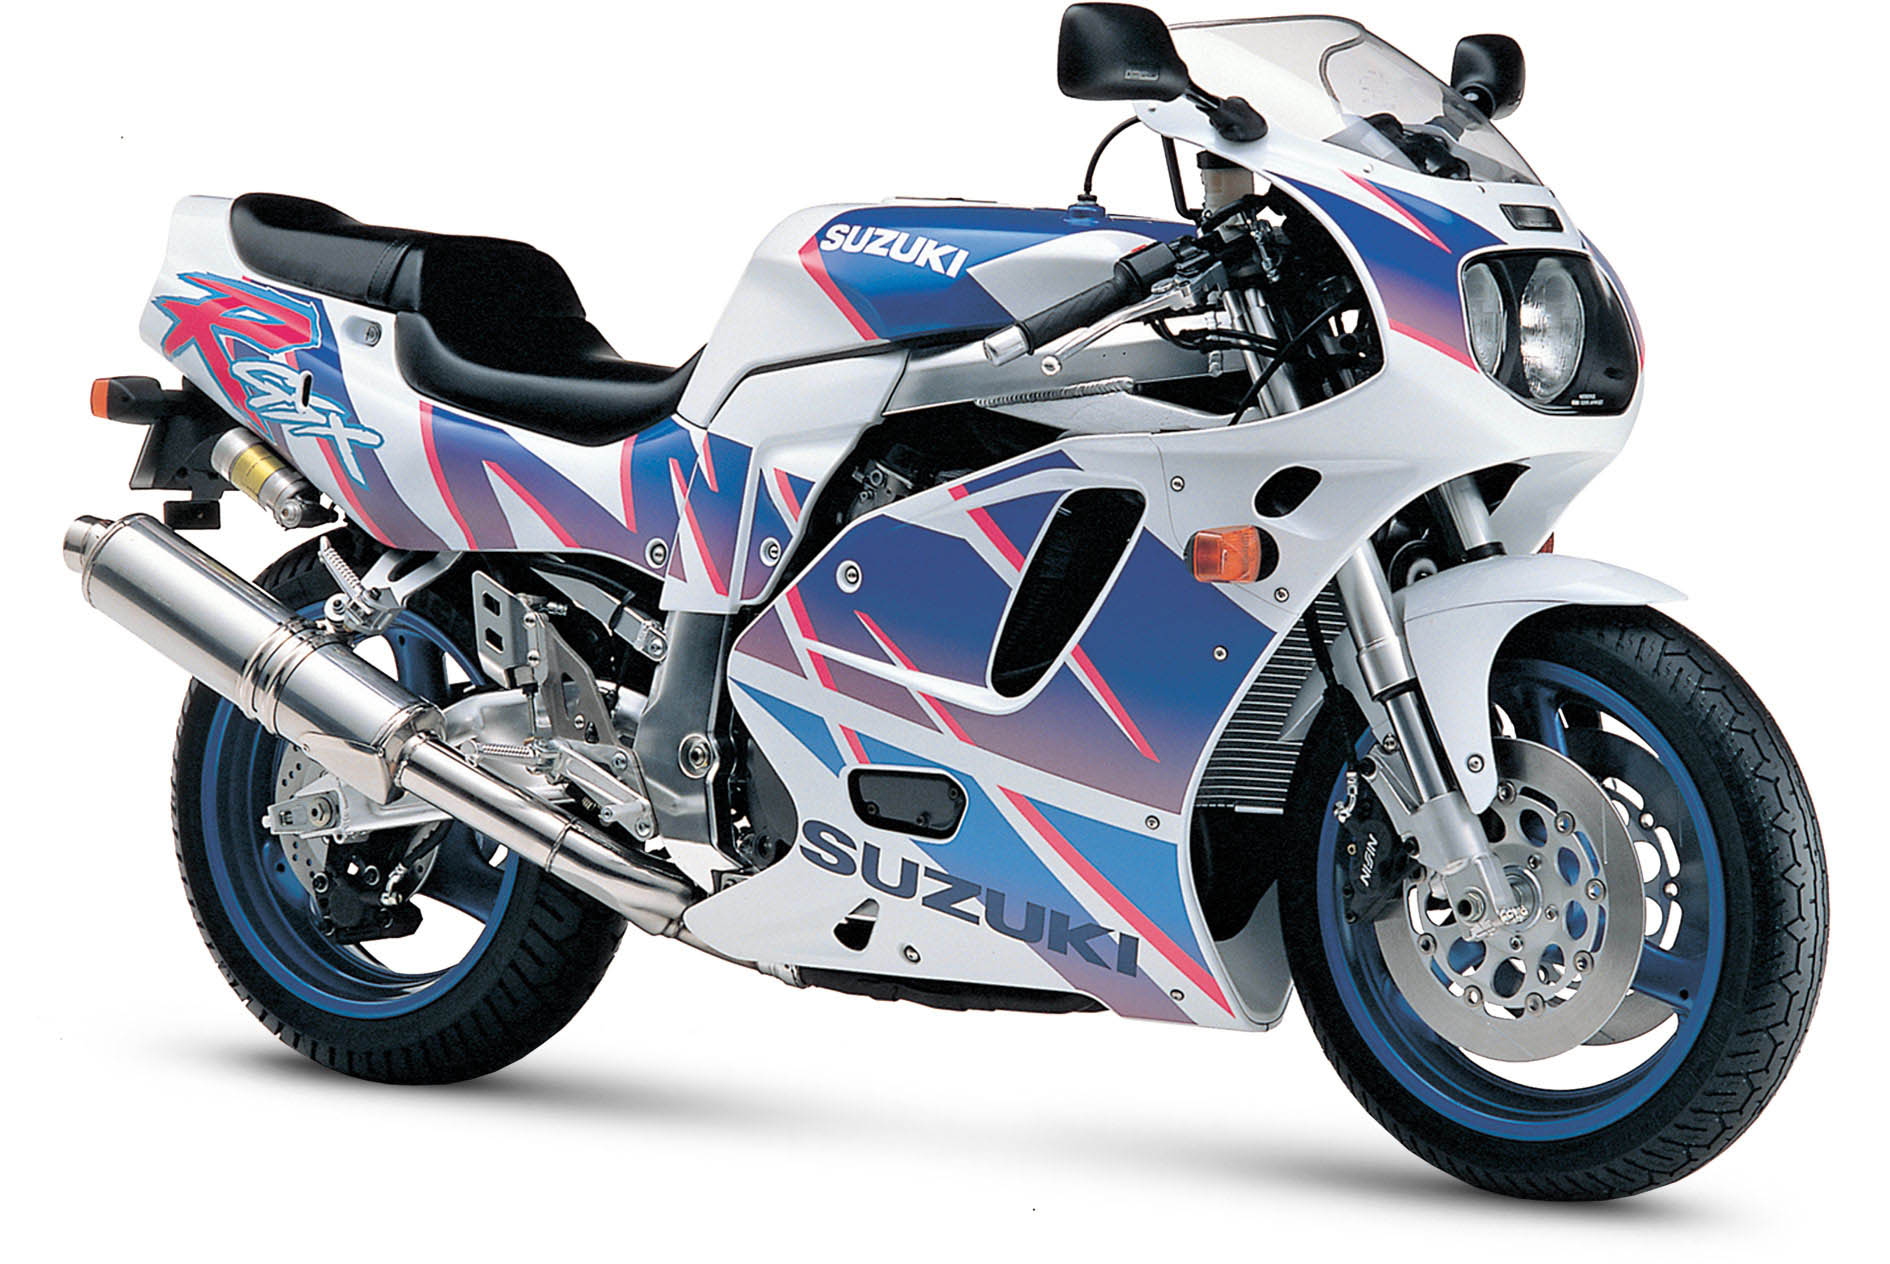 motos de corrida - Pesquisa Google  Suzuki gsx, Suzuki gsxr, Suzuki  motorcycle